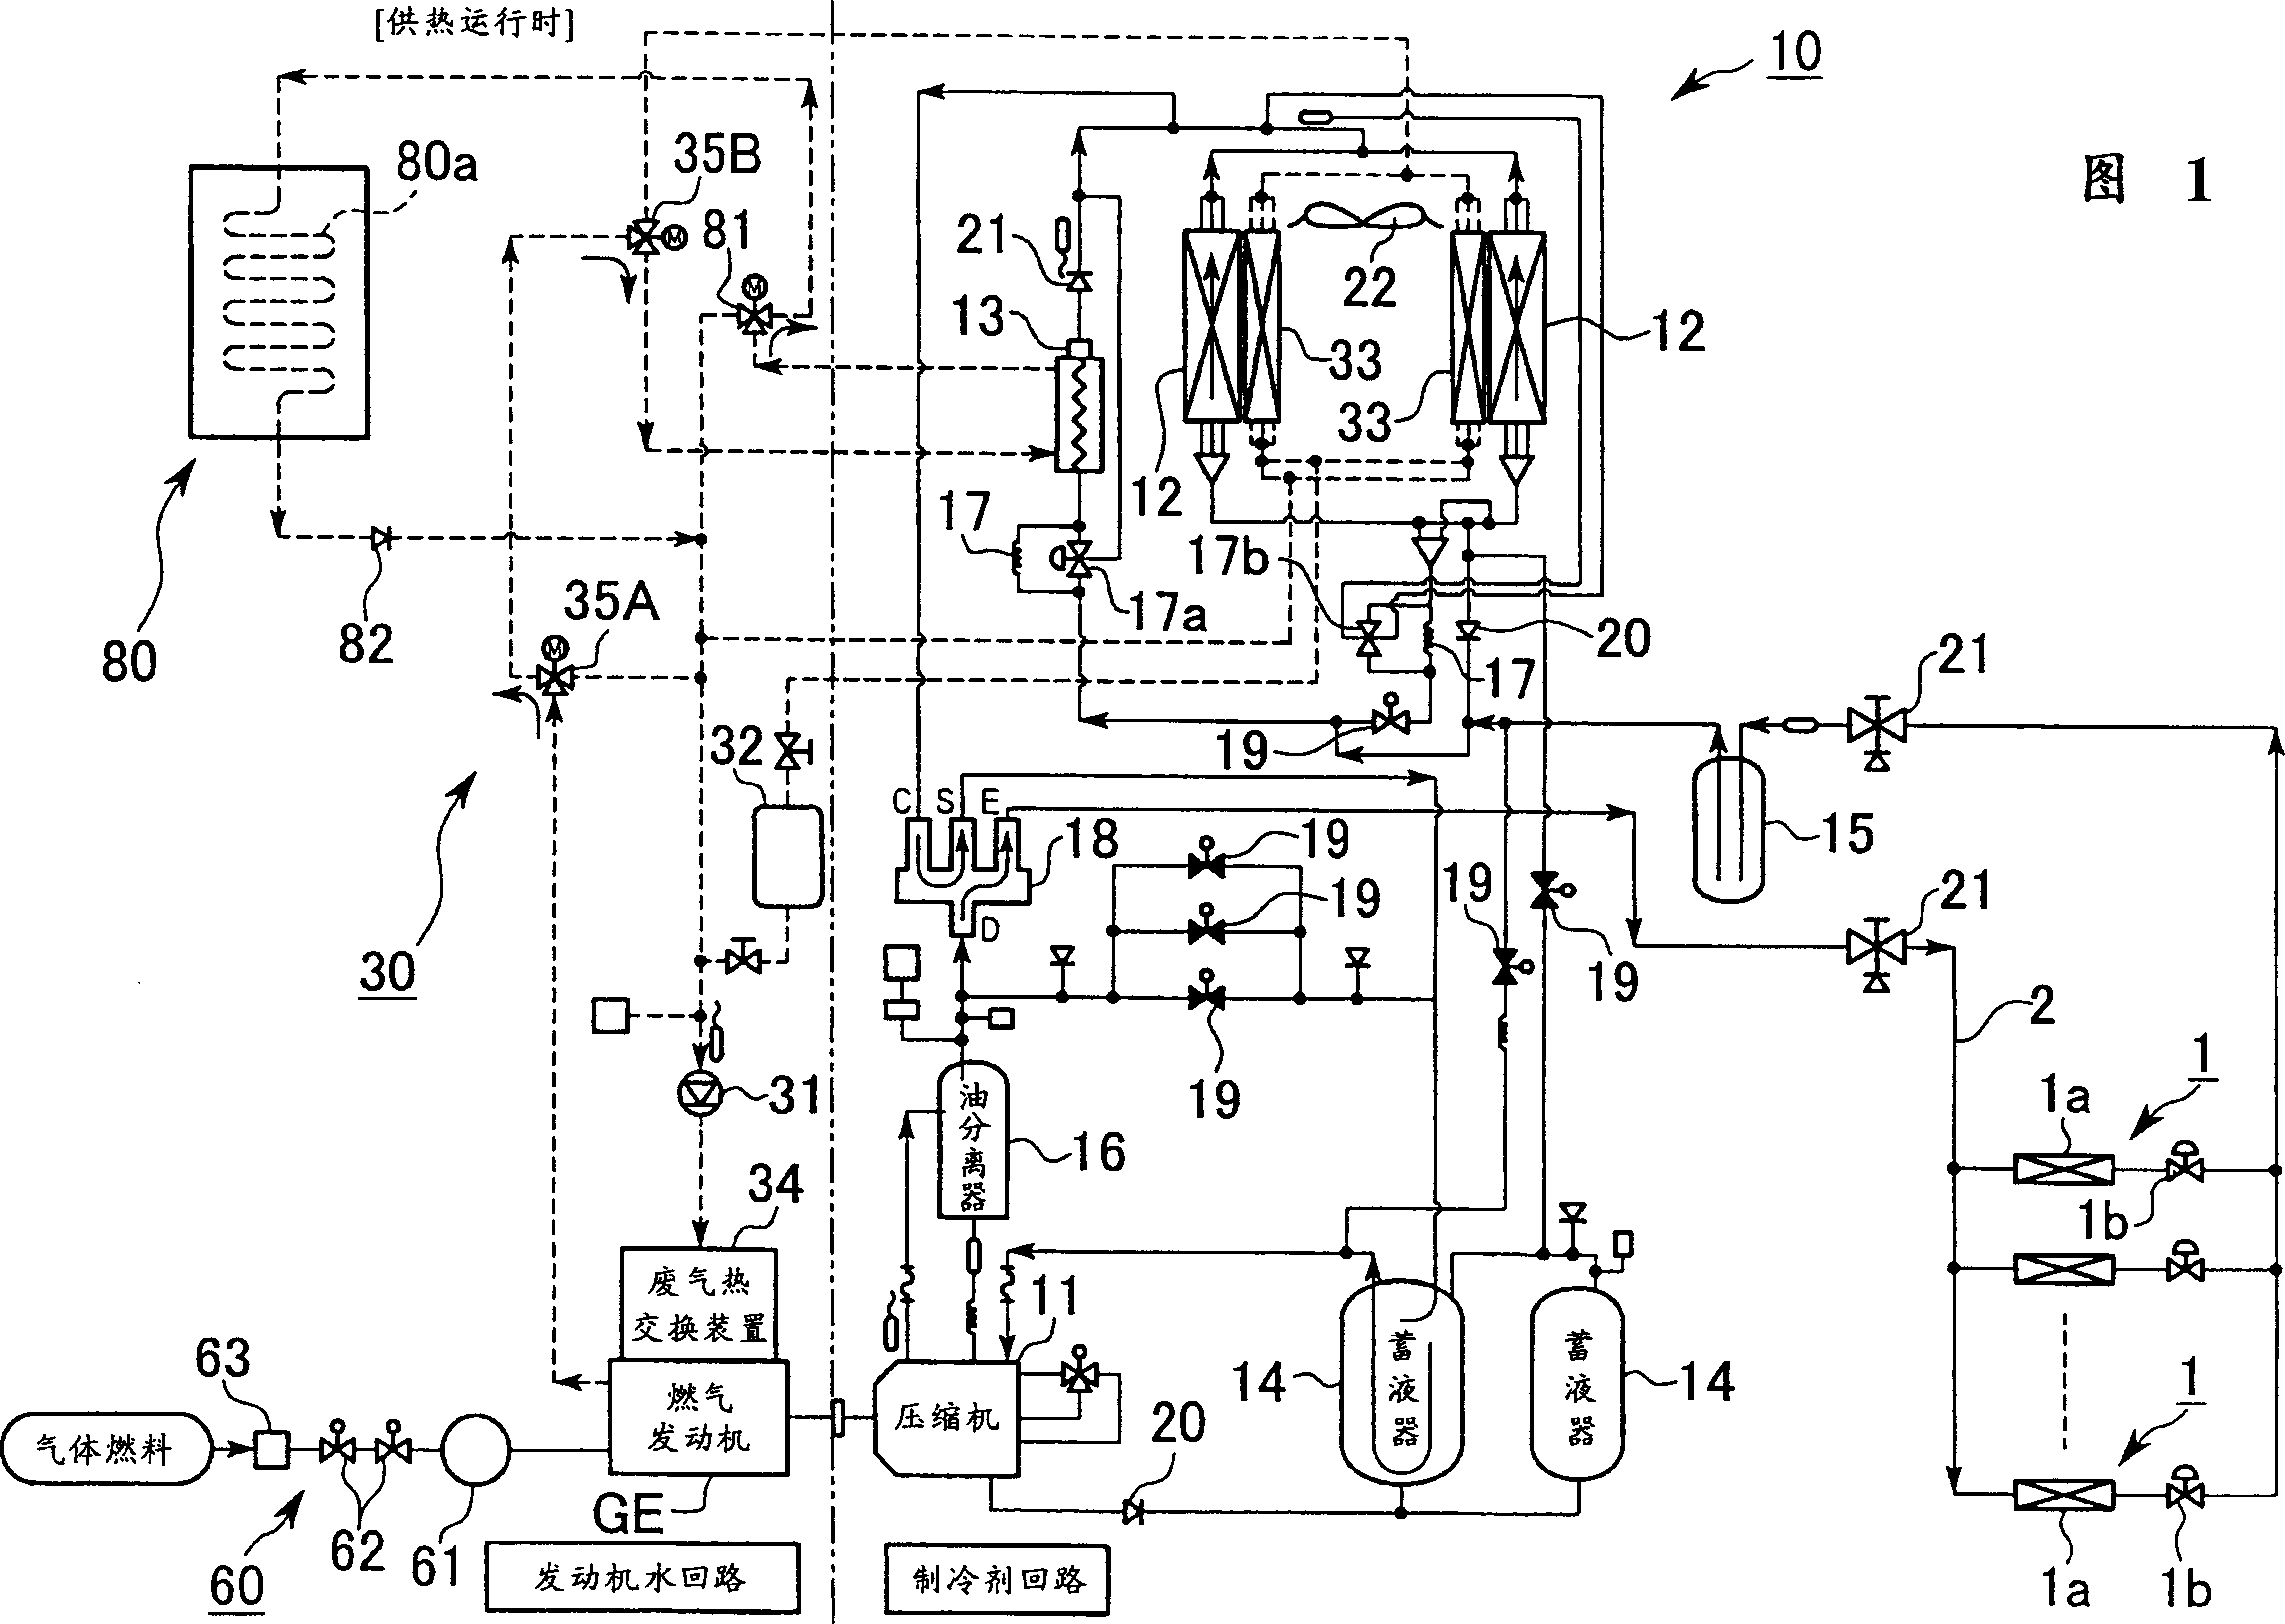 Gas heat pump type air conditioner